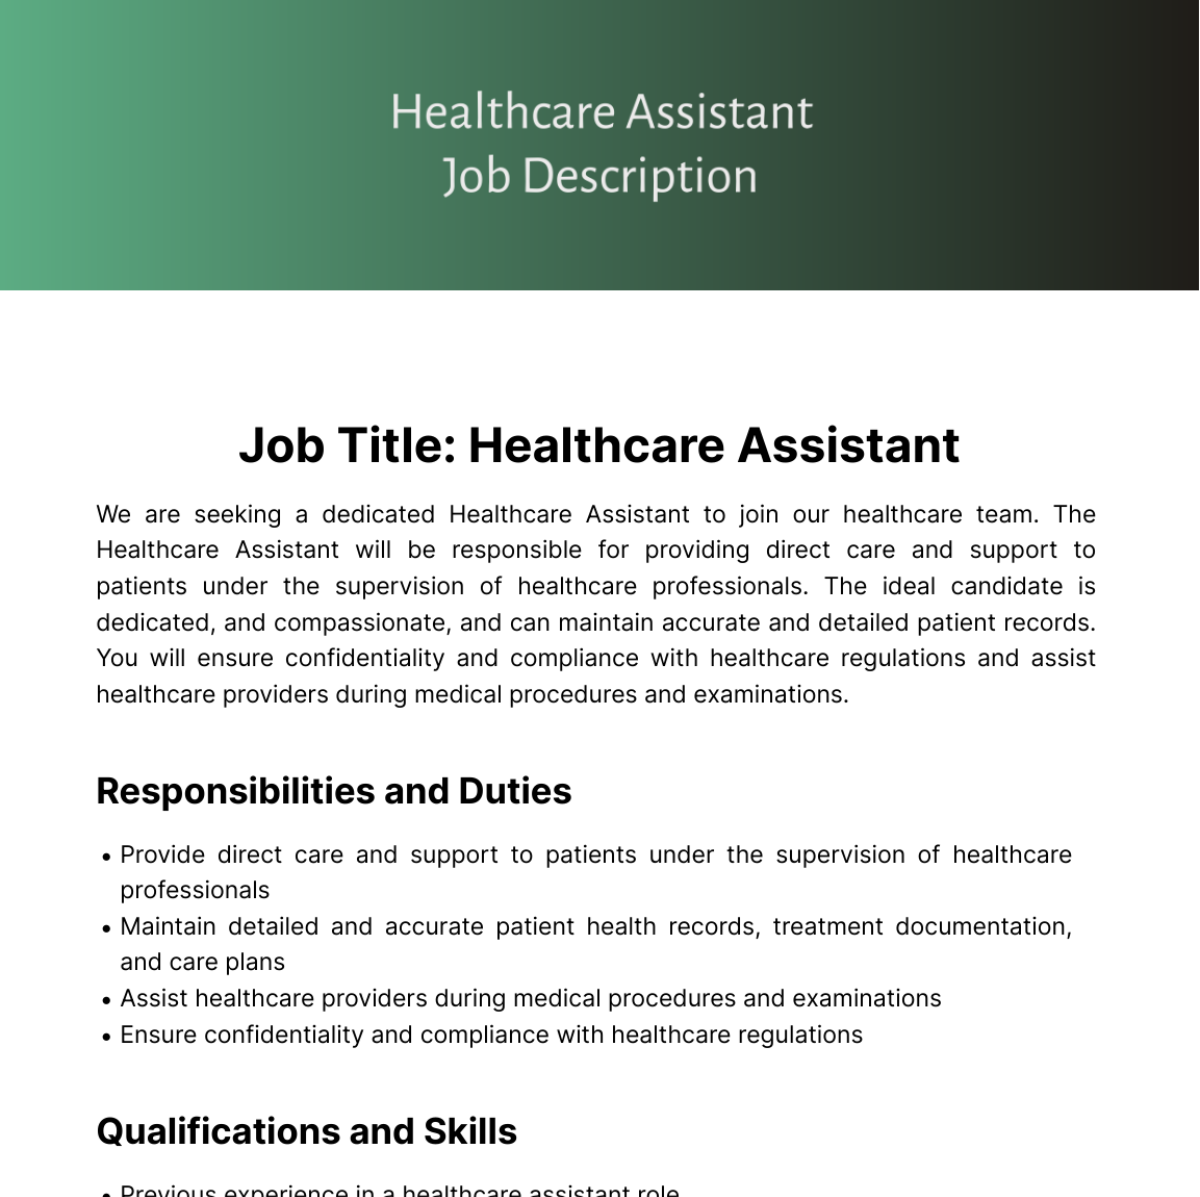 Healthcare Assistant Job Description